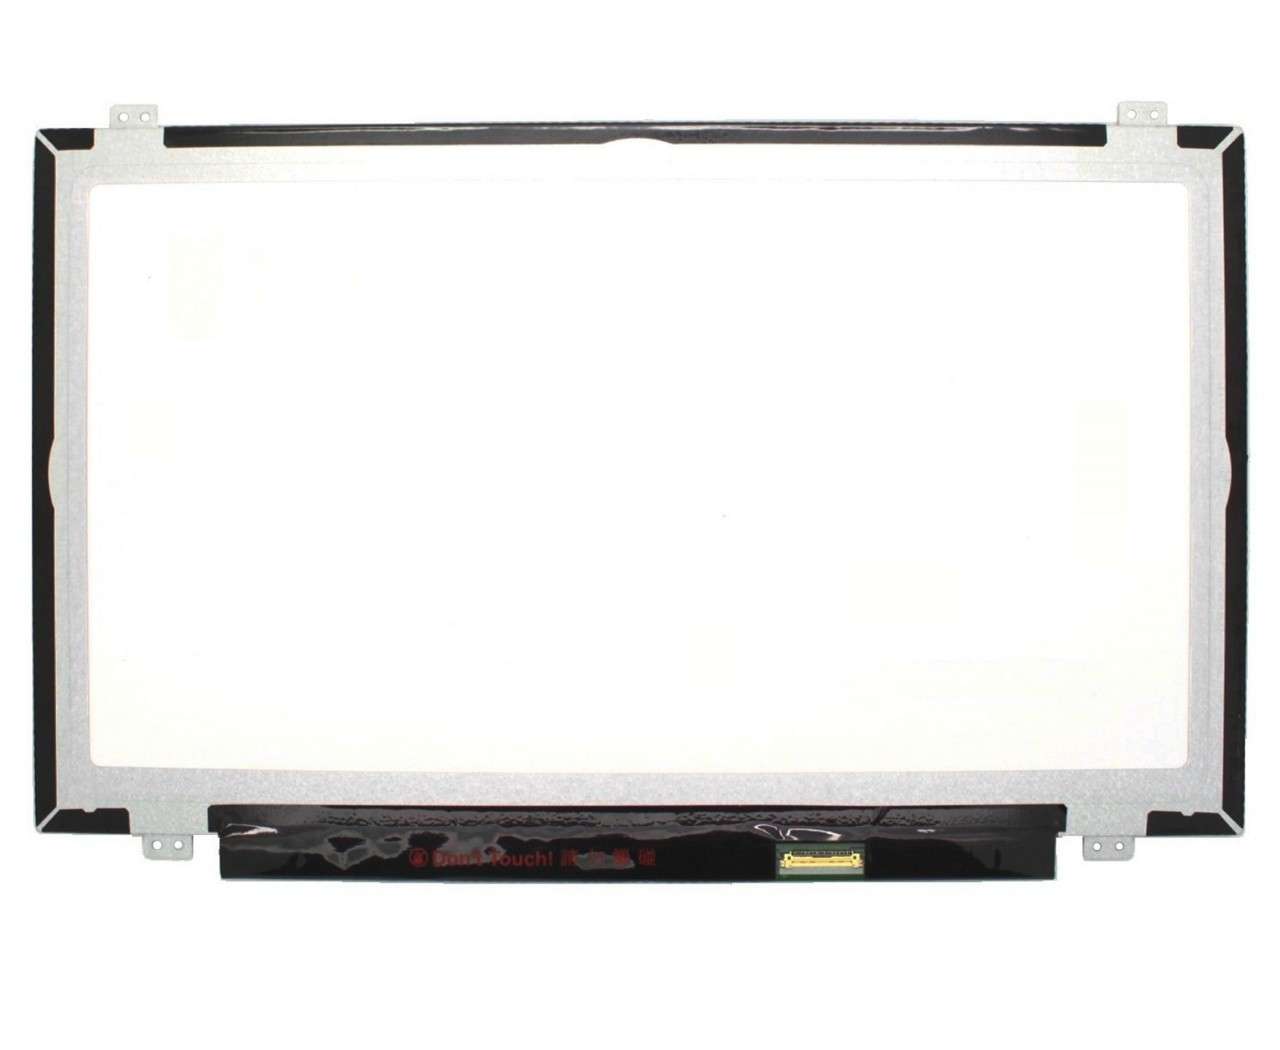 Display laptop AUO B140HAT02.0 Ecran 14.0 1920×1080 30 pini eDP imagine 2021 AUO